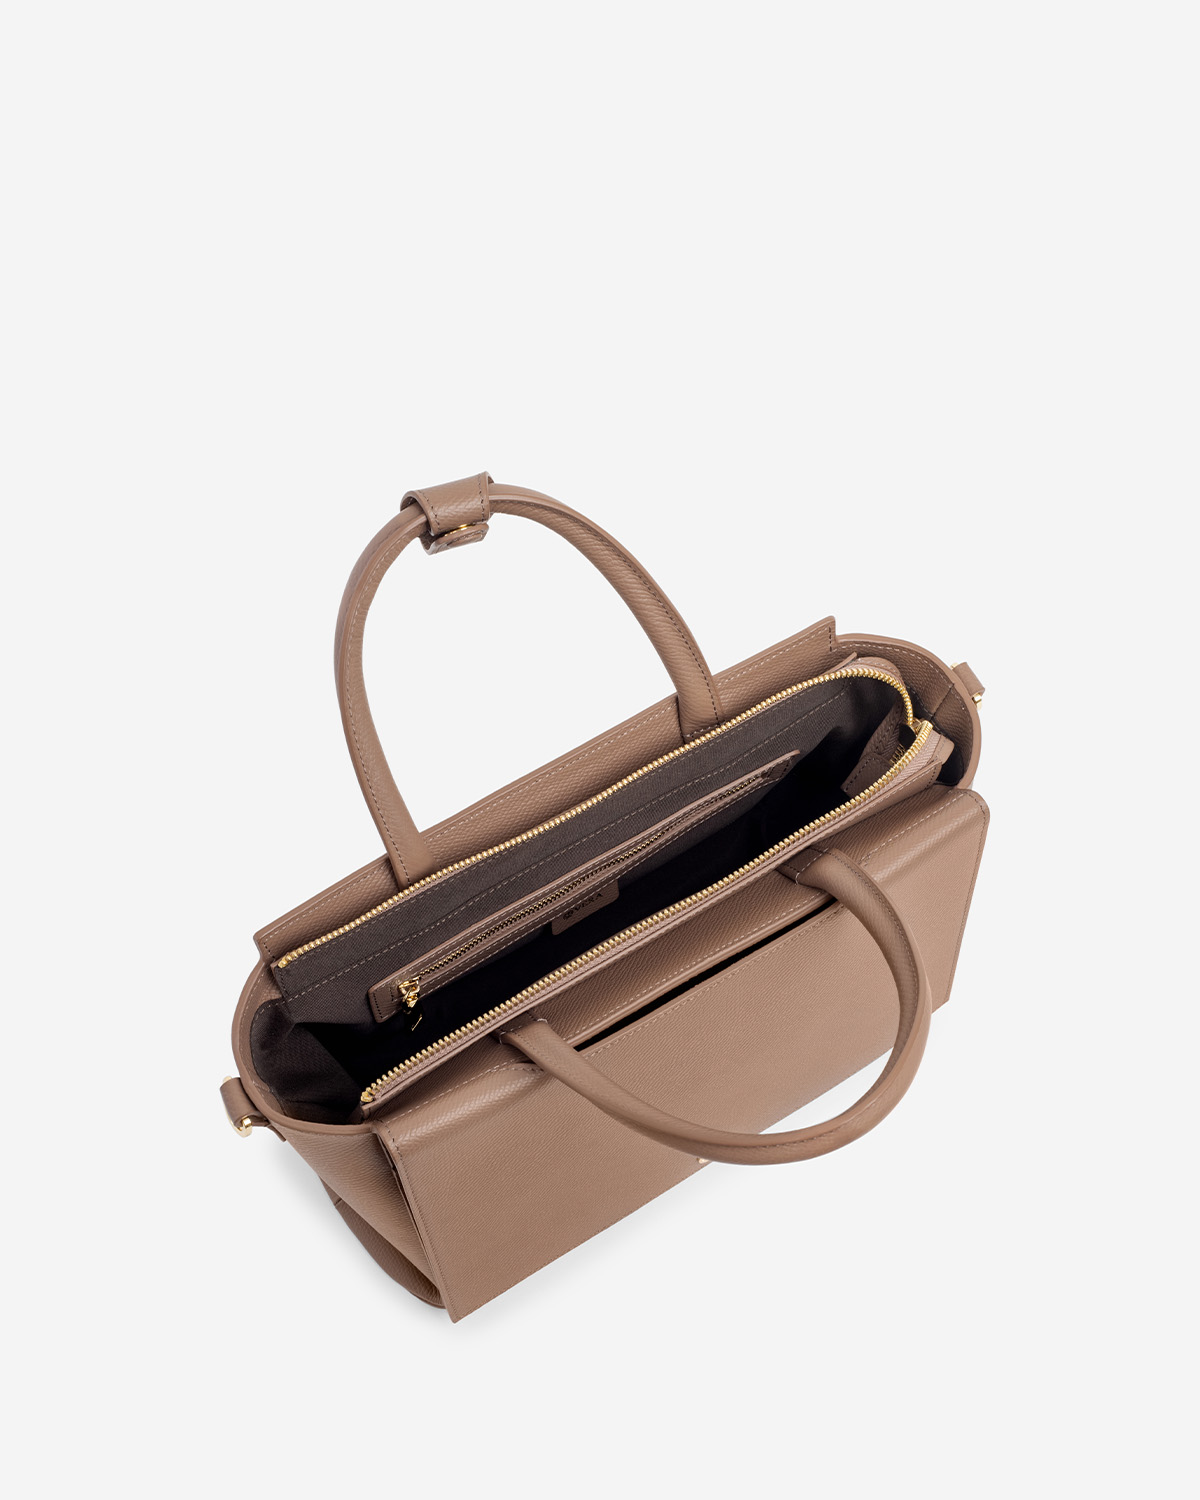 กระเป๋าถือหนังแท้ VERA Heidi Leather Handbag, ไซส์ 34 สี Wood Rose